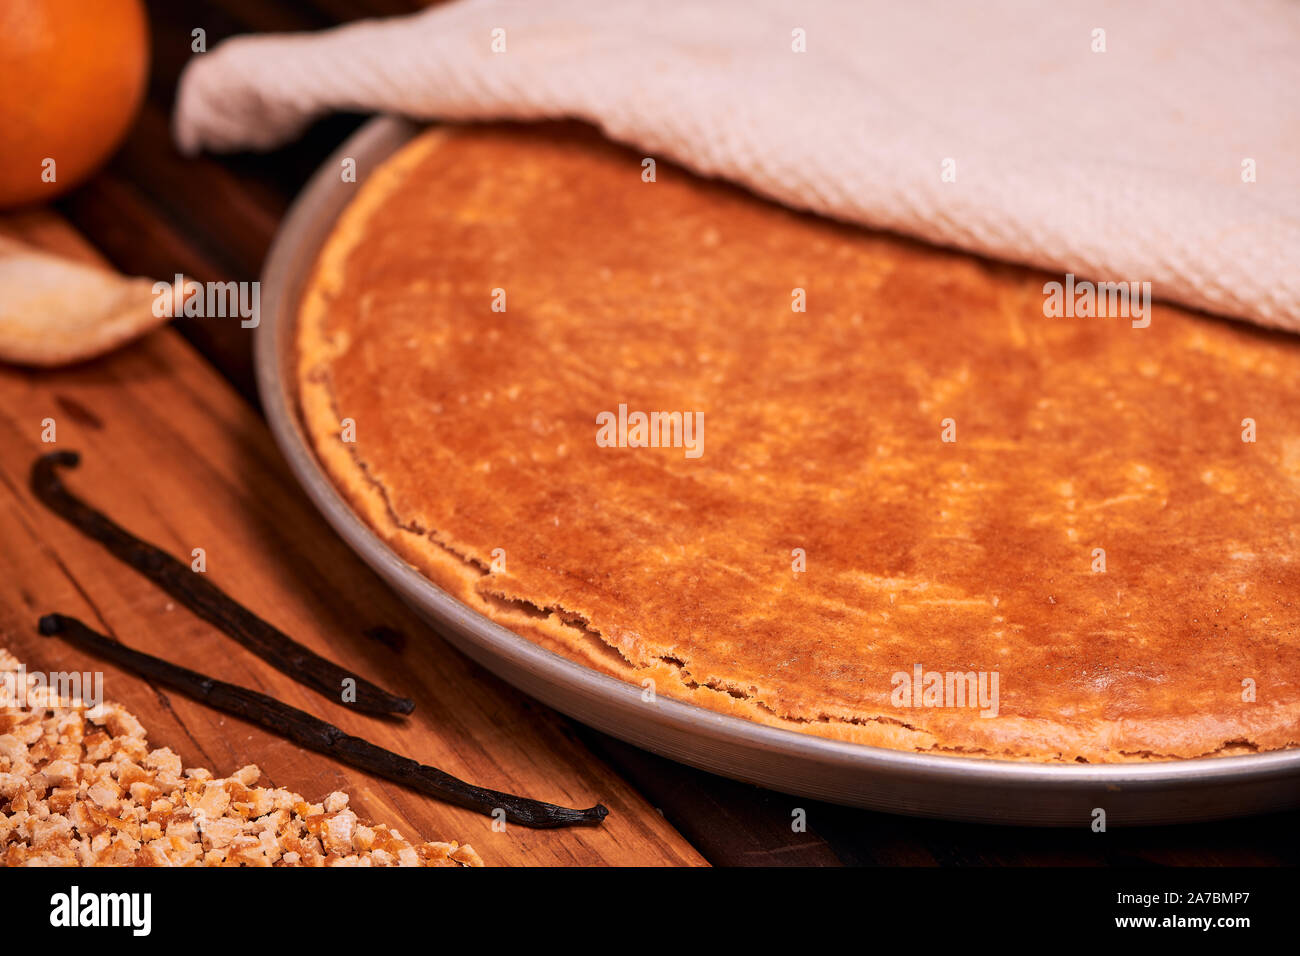 Warmen hausgemachten italienischen Ricotta Käsekuchen mit gehackten kandierten Orangenschalen auf Holz- Hintergrund. Italienisches Rezept. Stockfoto